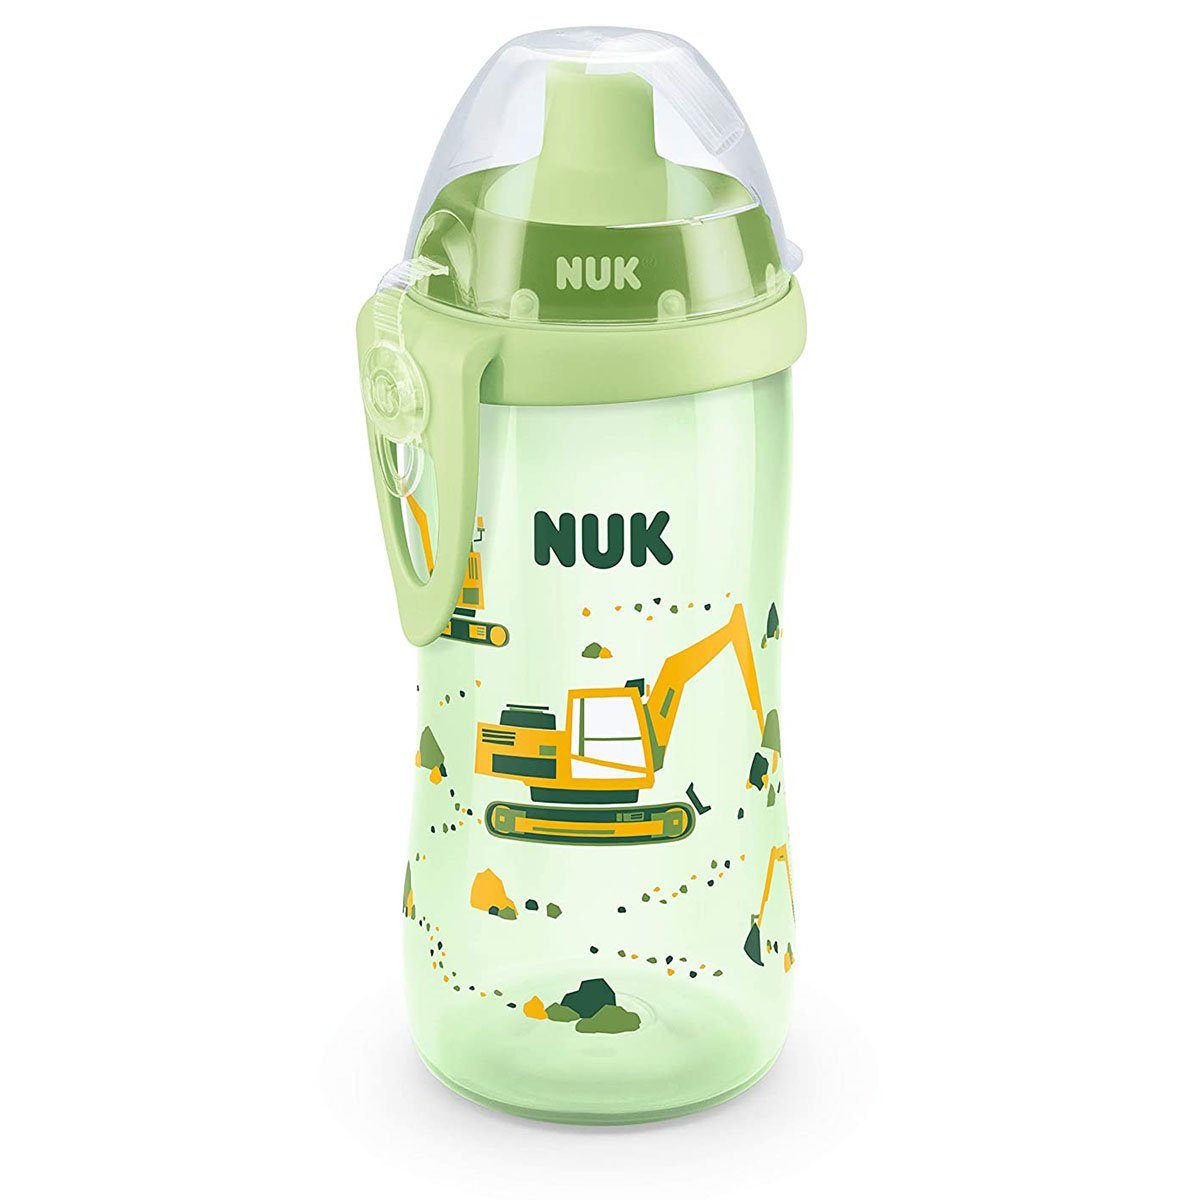 NUK Babyflasche NUK Flexi Cup Bagger Trinkhalm, 300ml, mit Trinklernflasche (grün)